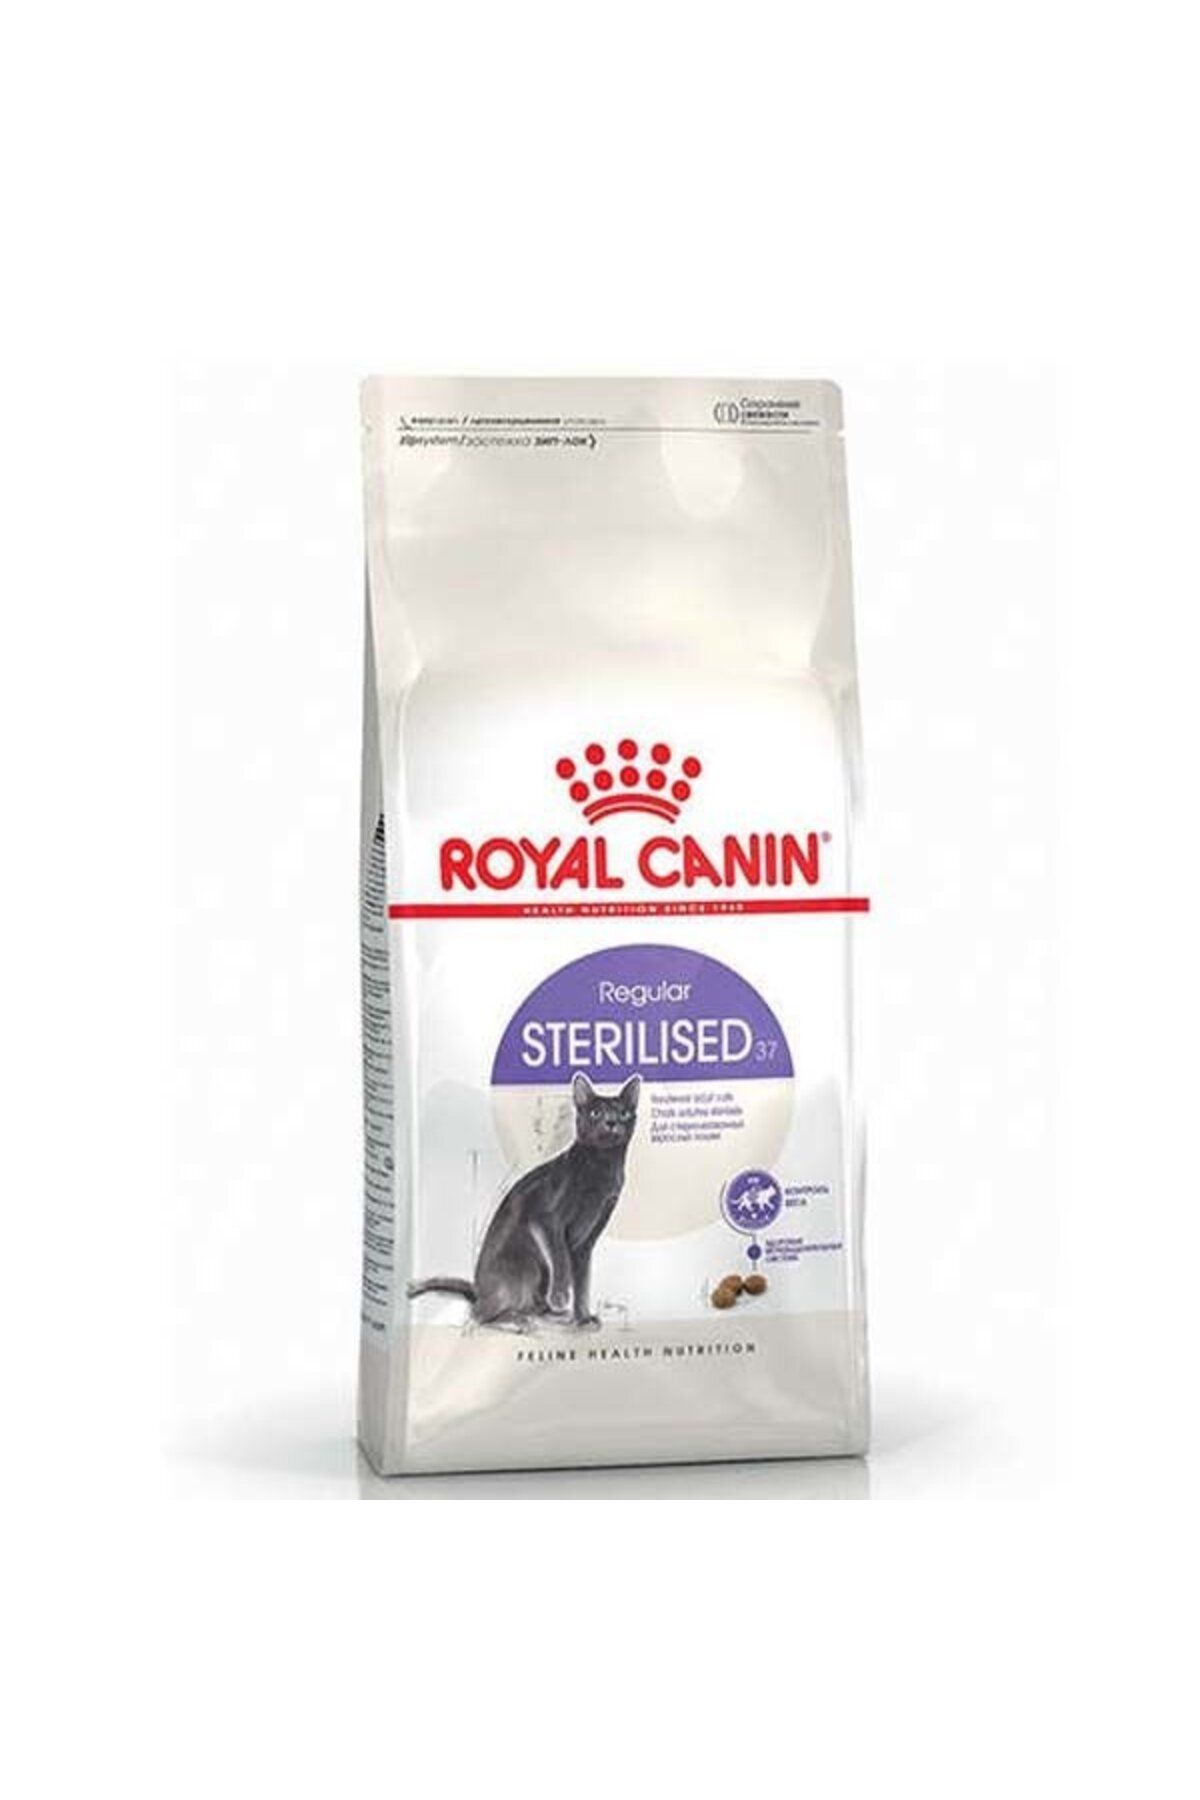 Royal Canin Sterilised Kısırlaştırılmış Kedi Maması 400 Gr